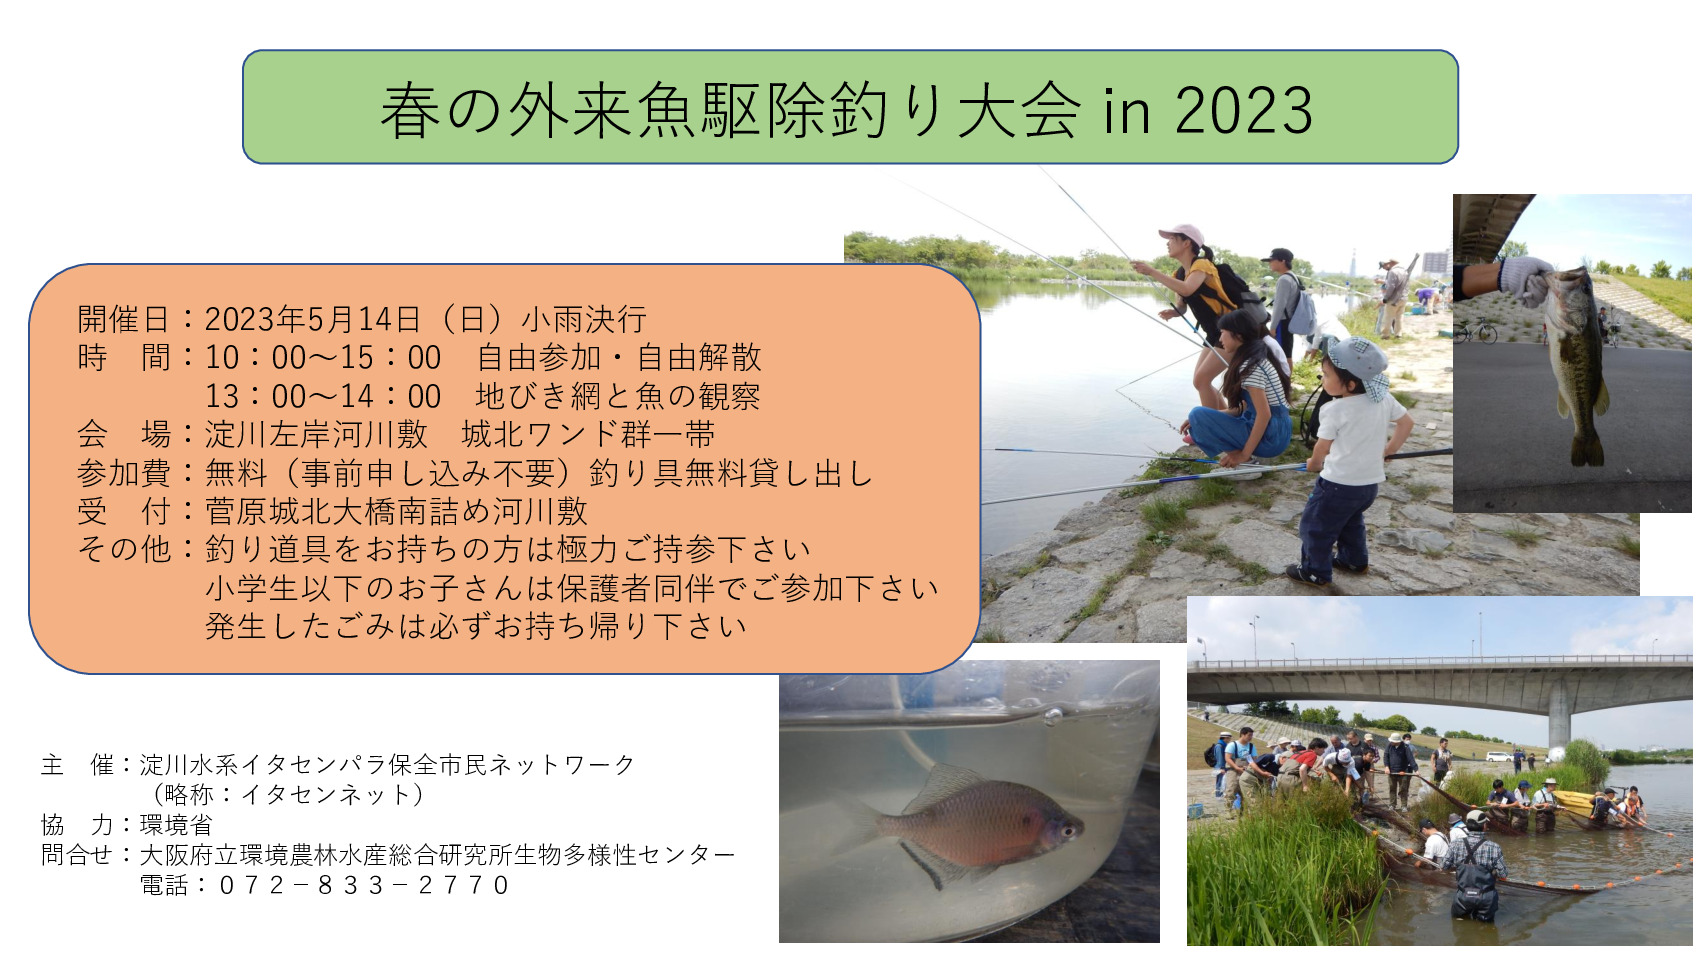 外来魚駆除釣り大会2023のサムネイル